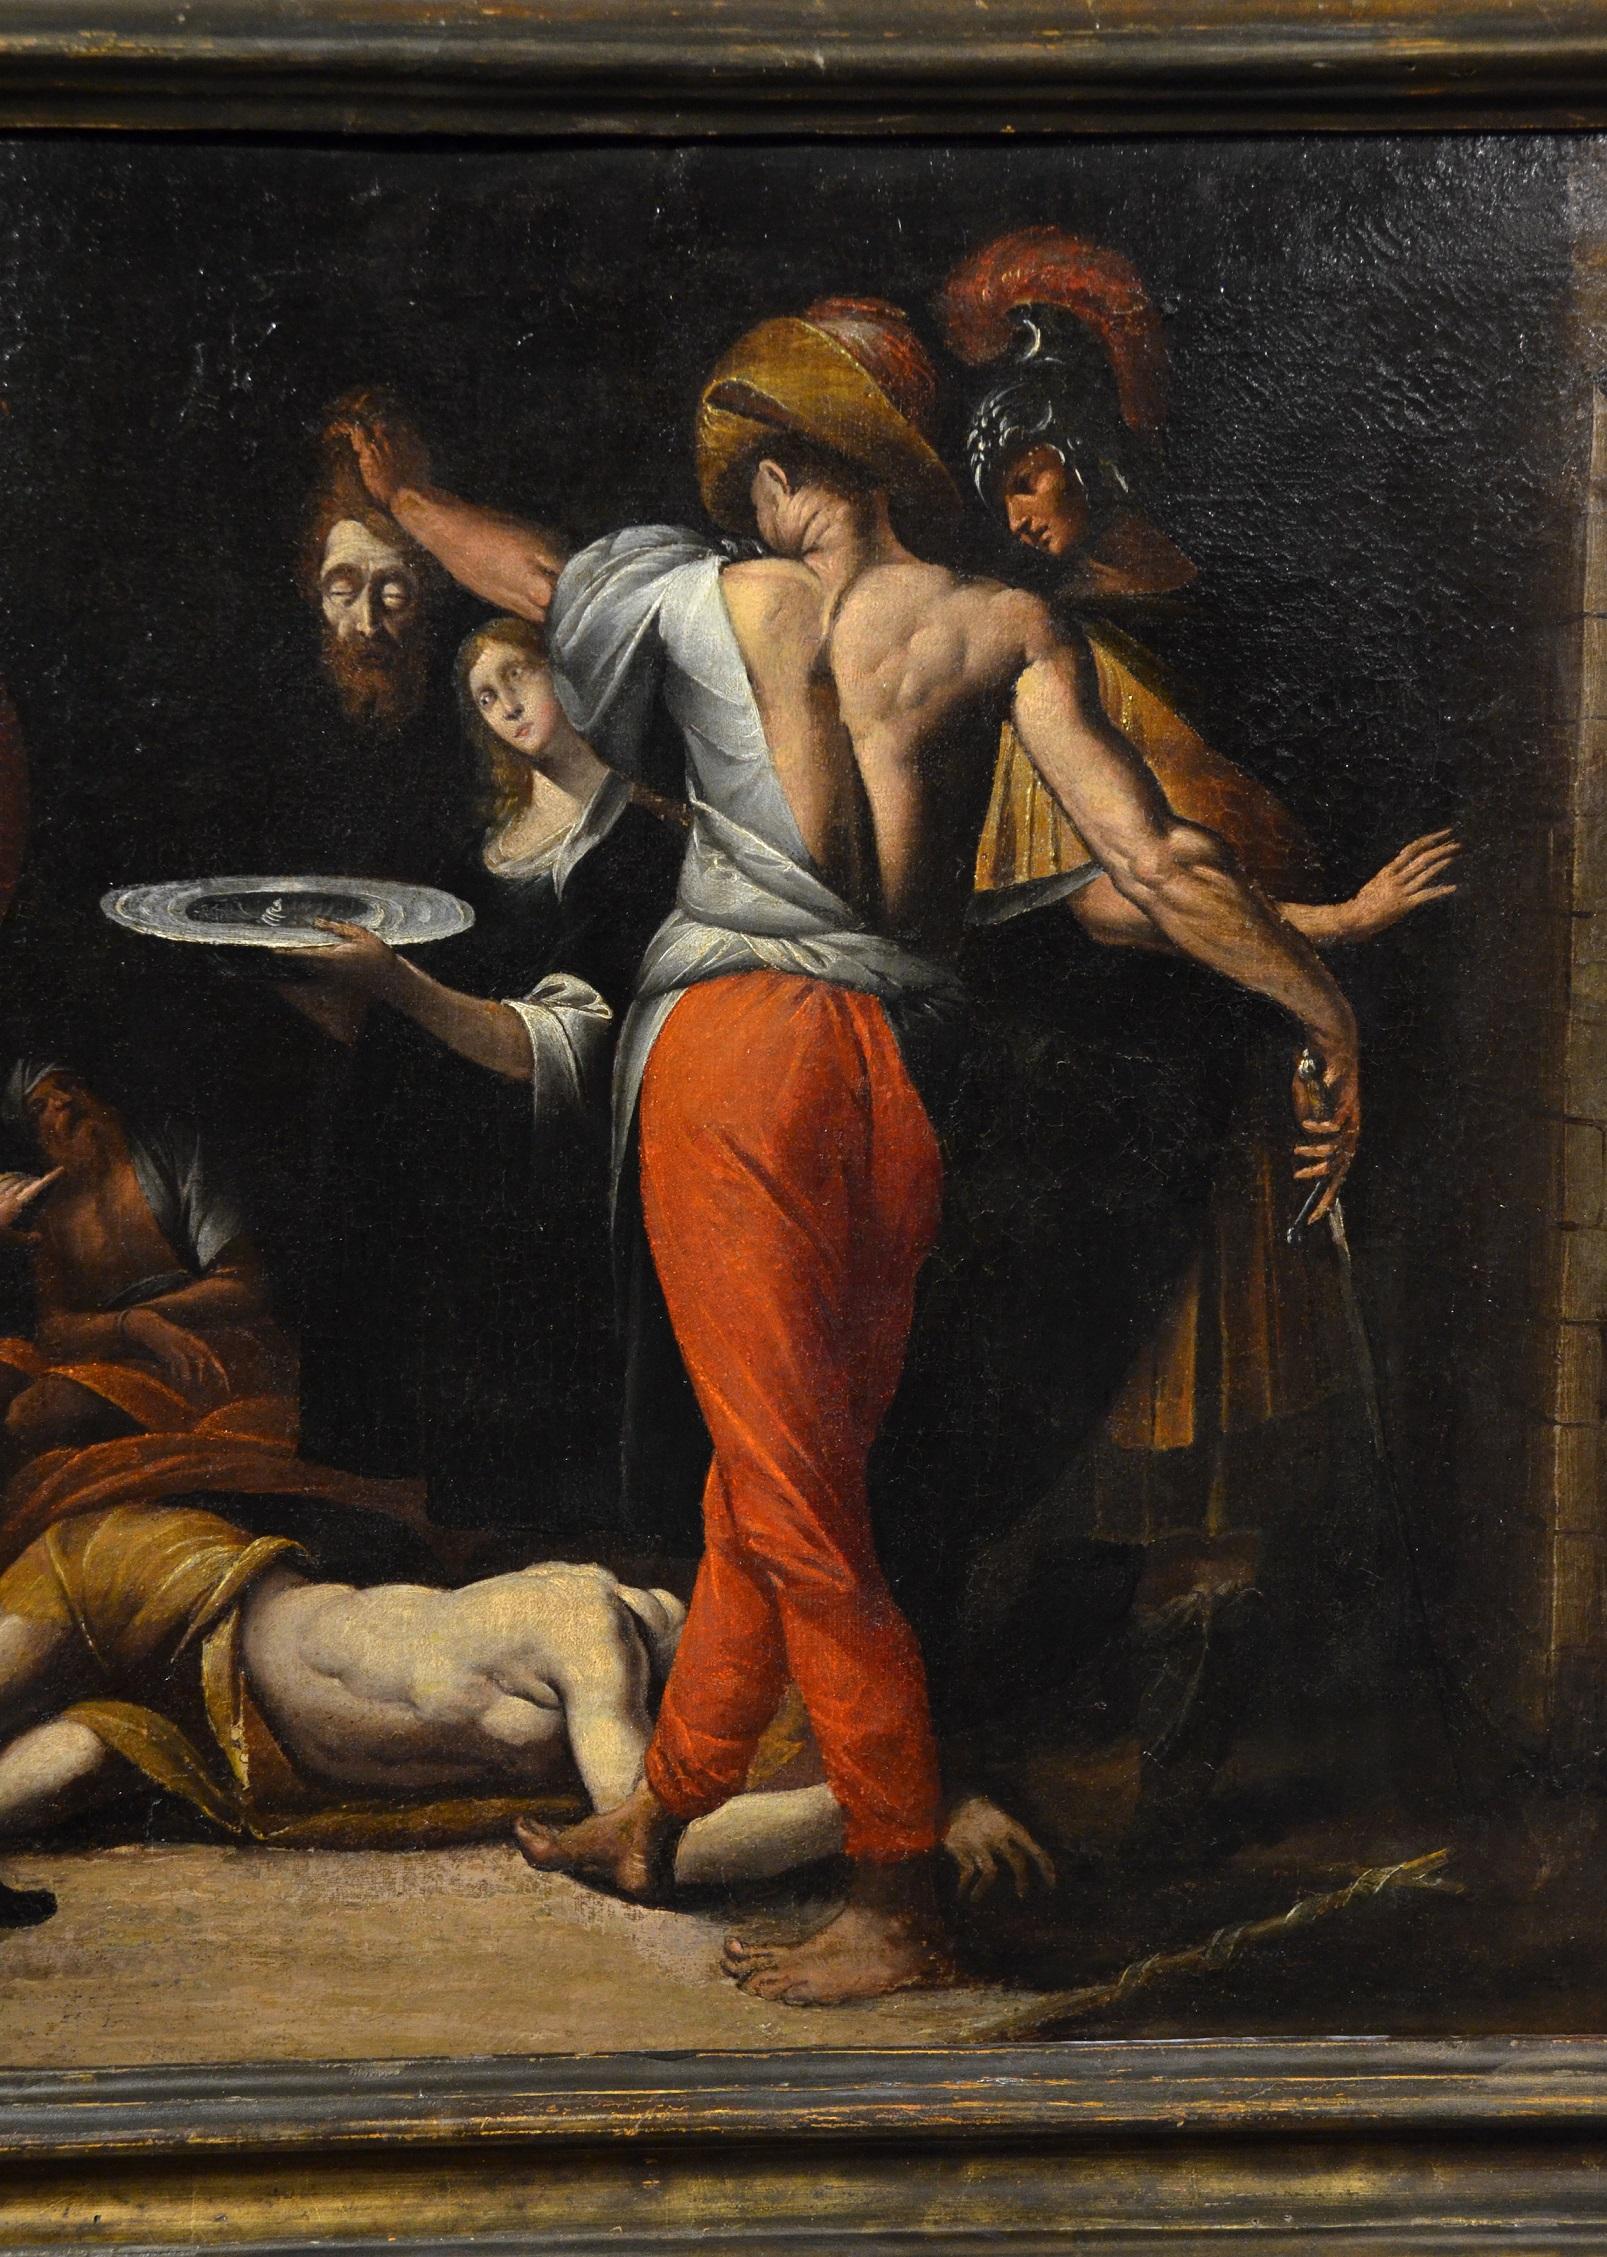 Saint John Baptist Morazzone Paint Oil on canvas Old master 17th Century Italy 2